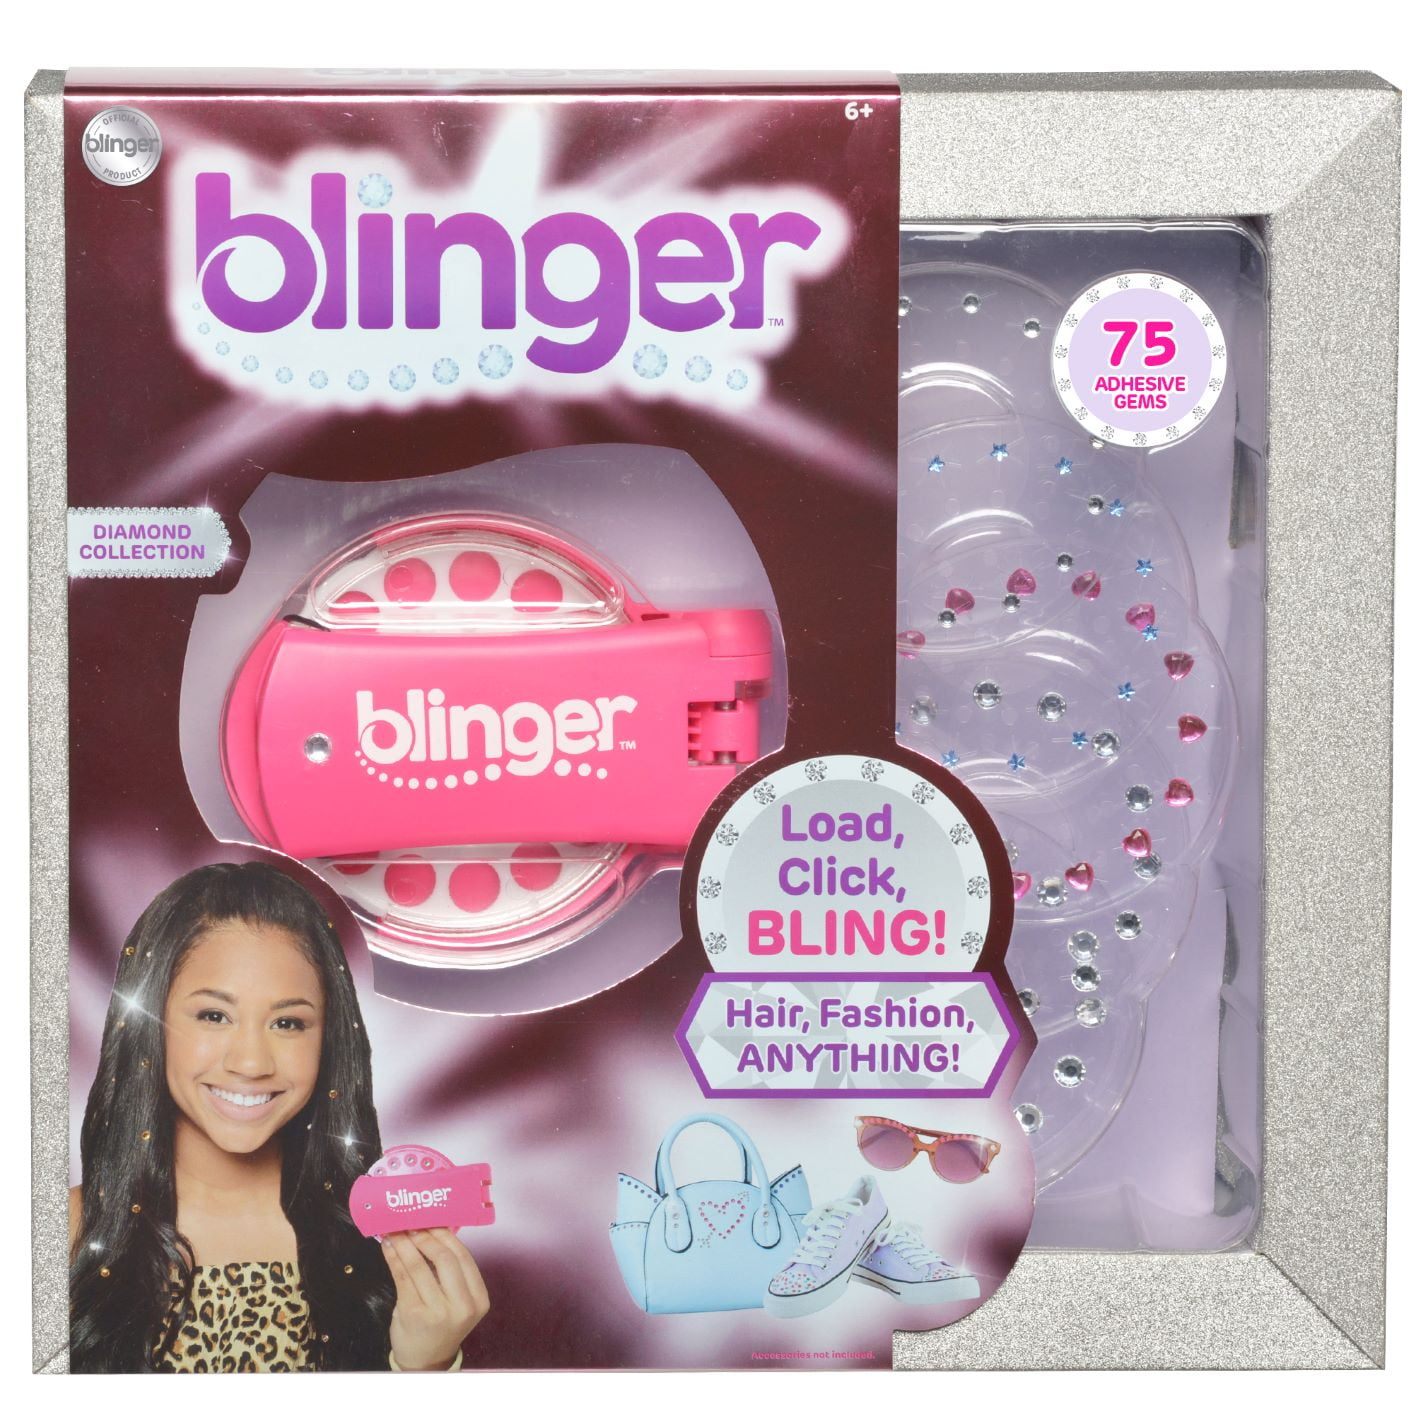 blinger Starter Kit  Women's Hair Styling Tool + 75 Precision-Cut